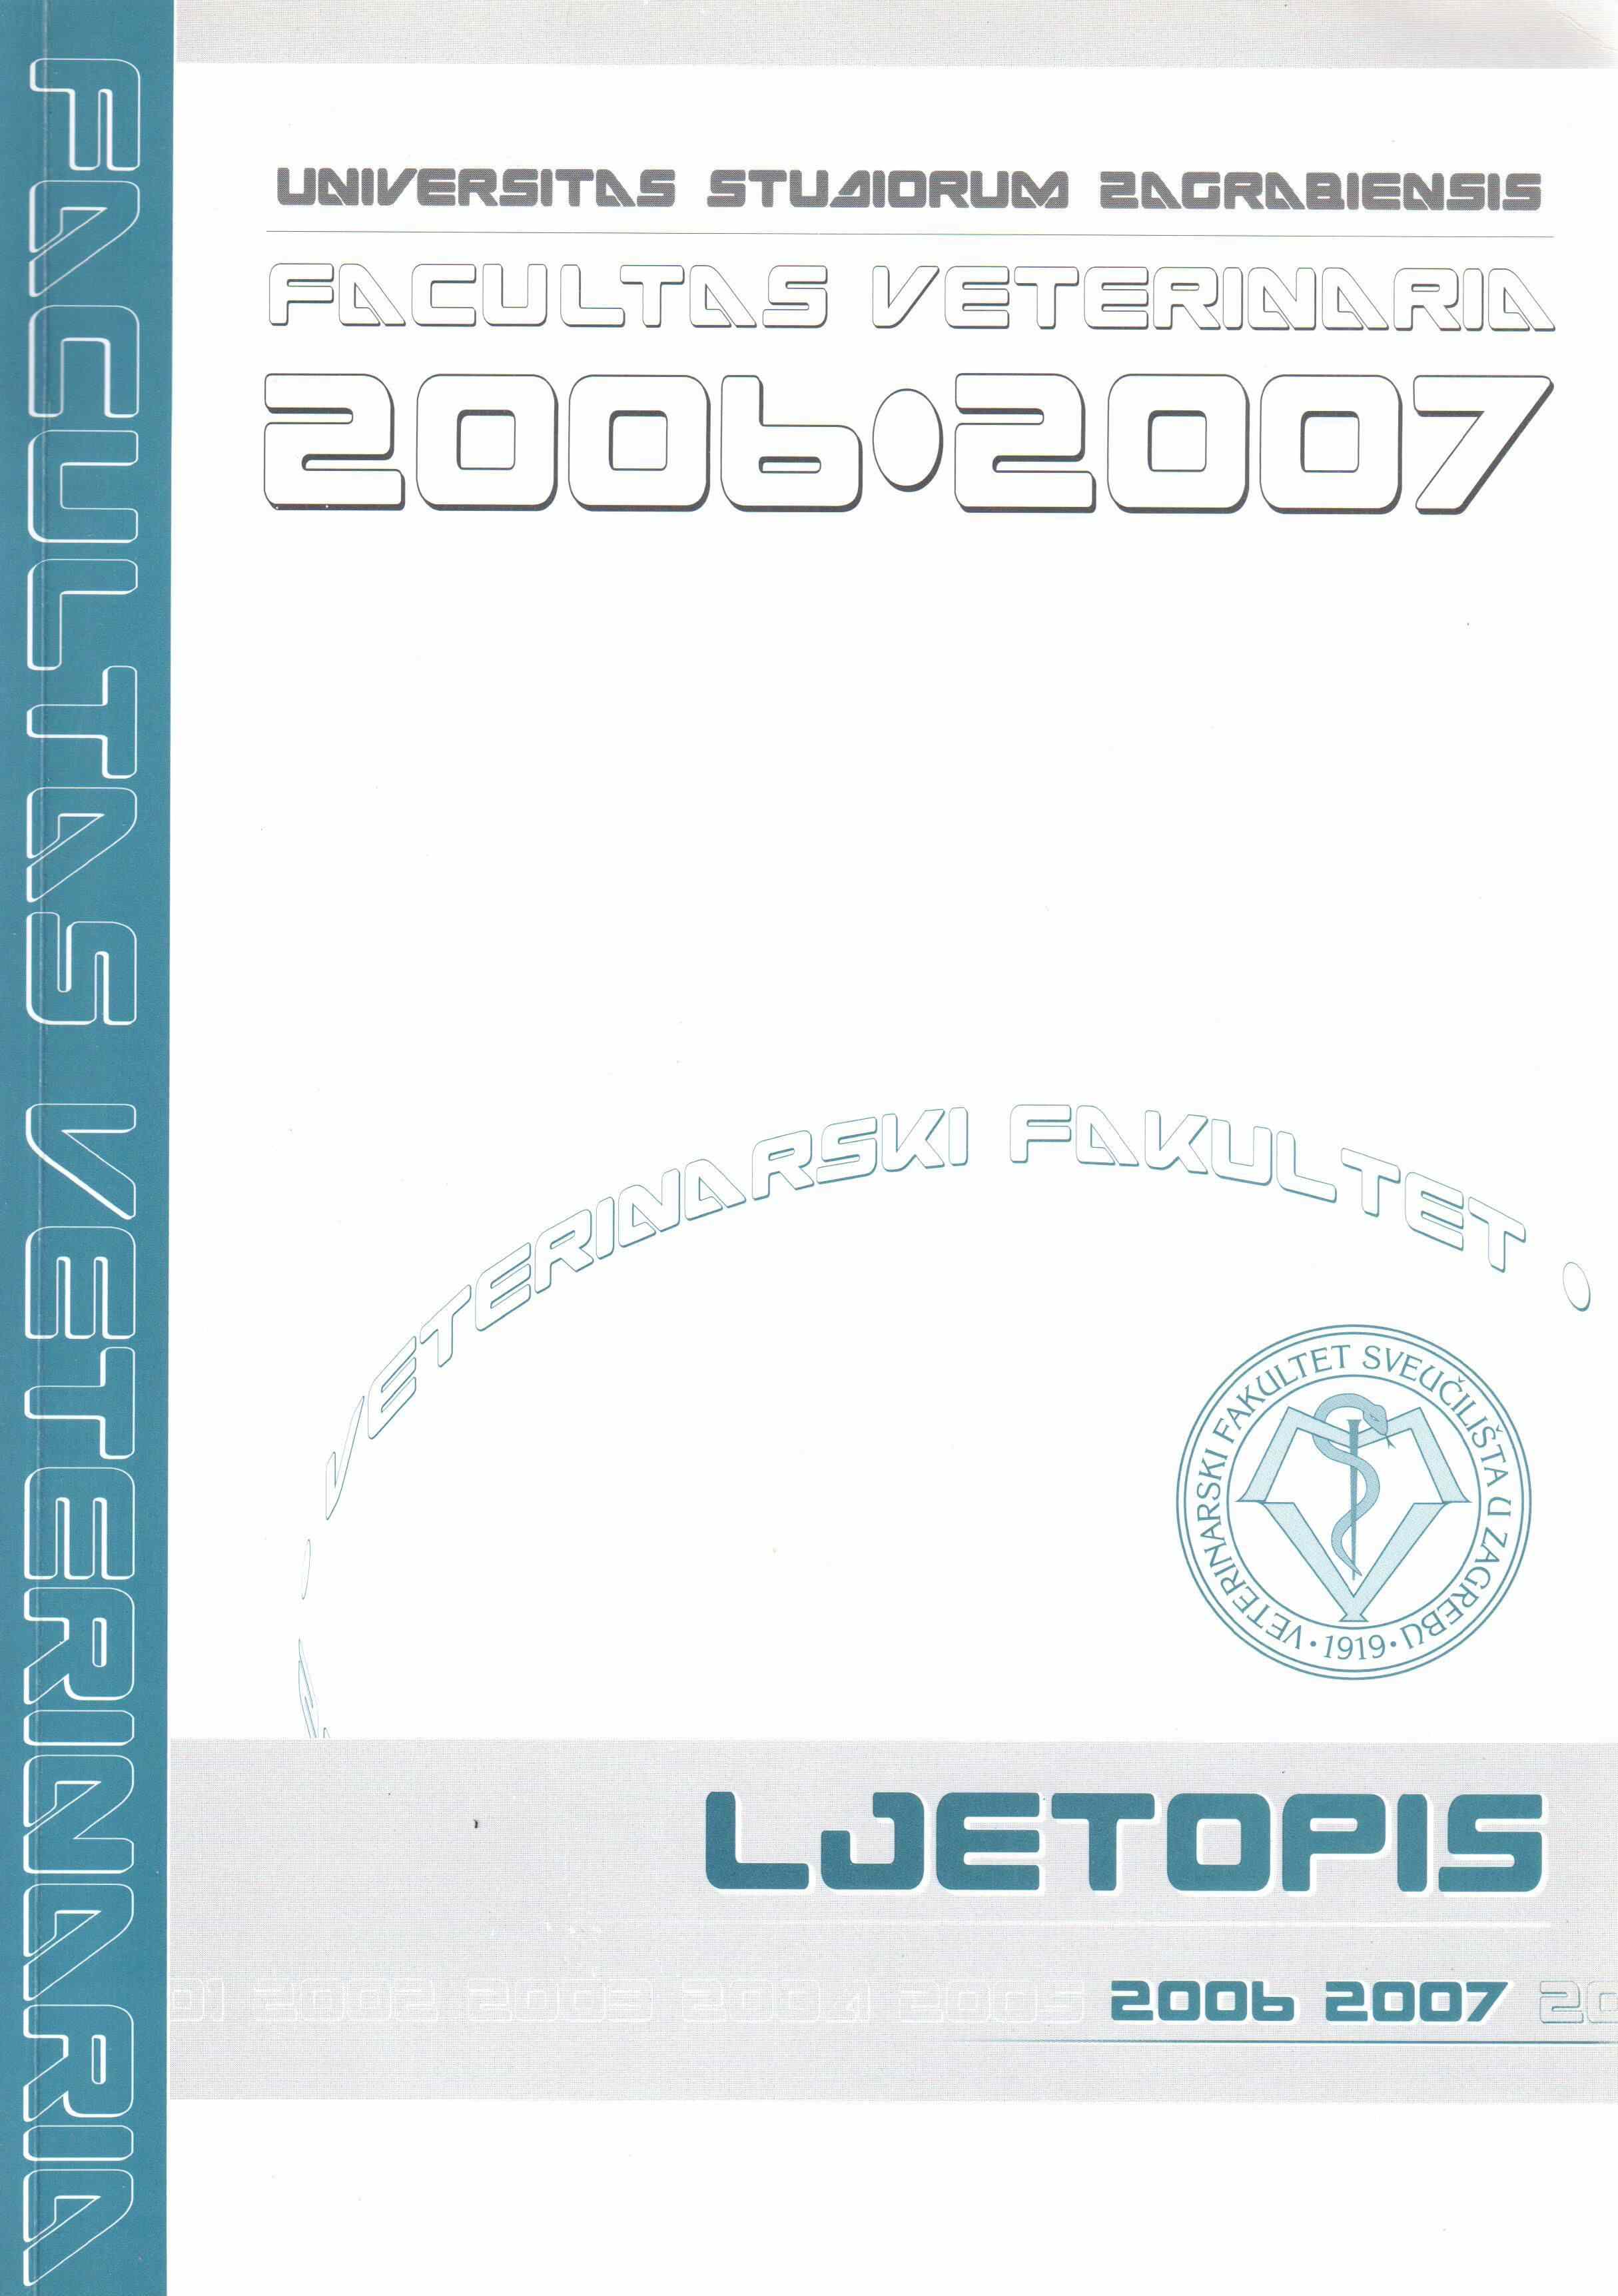 Ljetopis 2006-2007